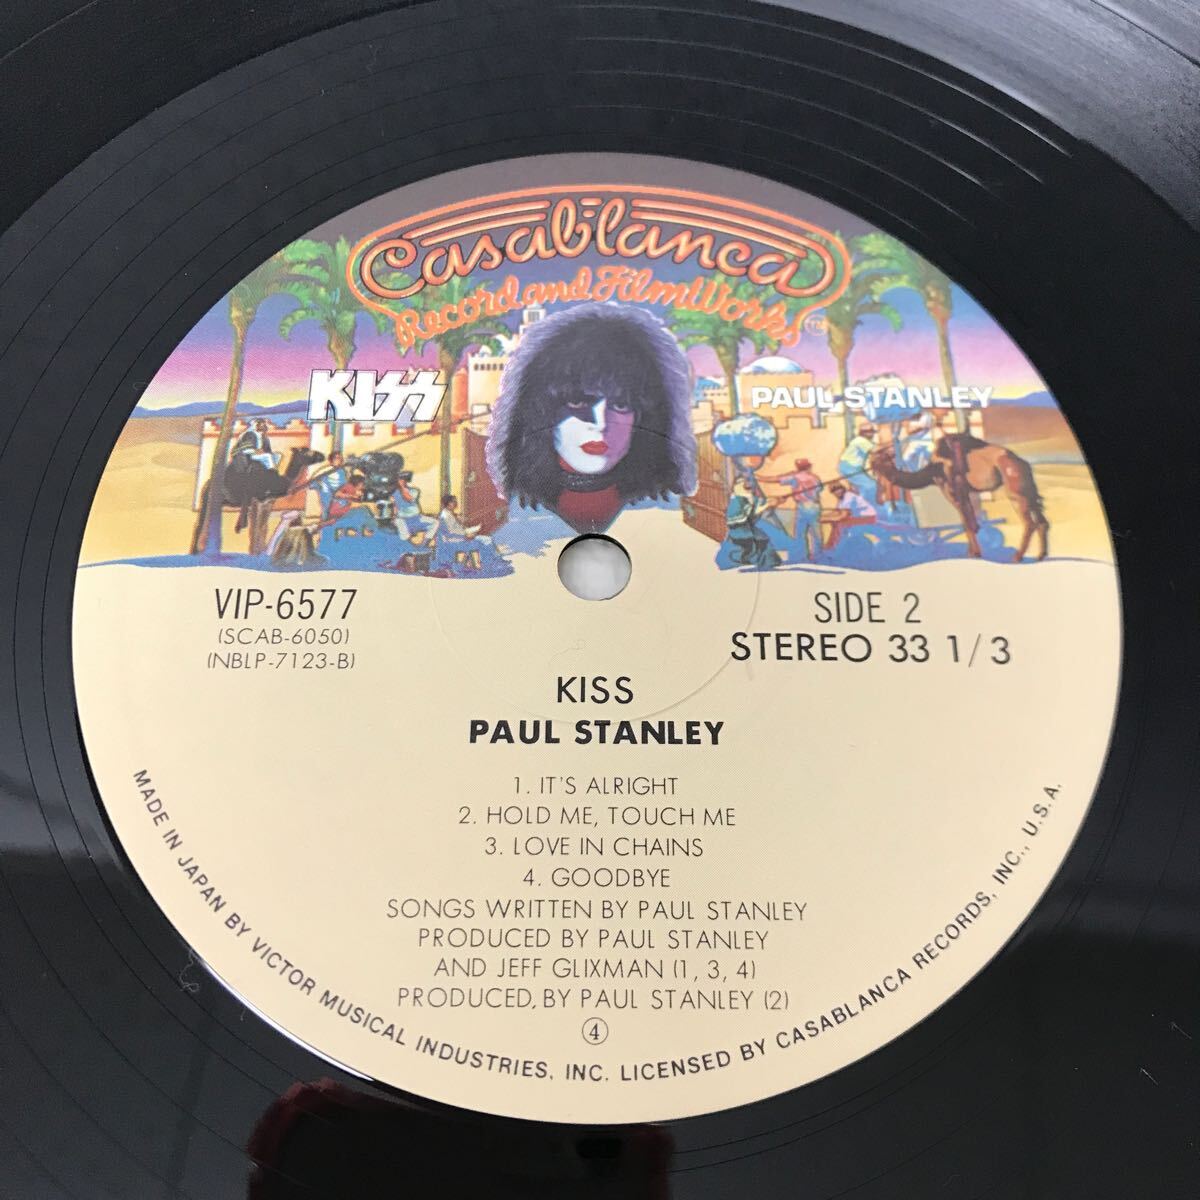 I0416B3 KISS キッス PAUL STANLEY ポール・スタンレー LP レコード 音楽 洋楽 ロック VIP-6577 国内盤 カサブランカ _画像7